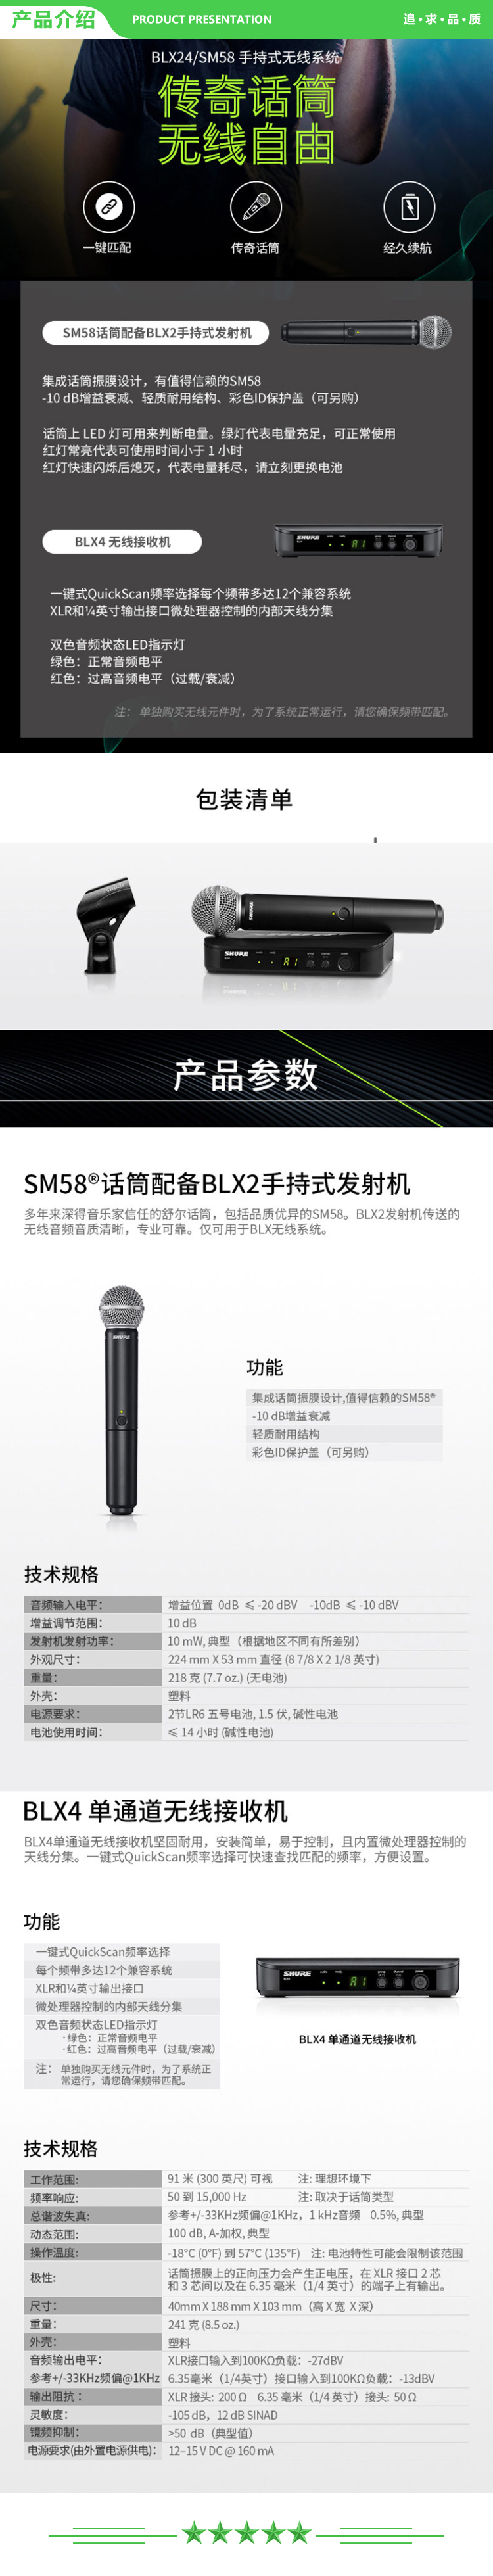 舒尔 Shure BLX24 SM58 专业手持无线麦克风话筒 .jpg